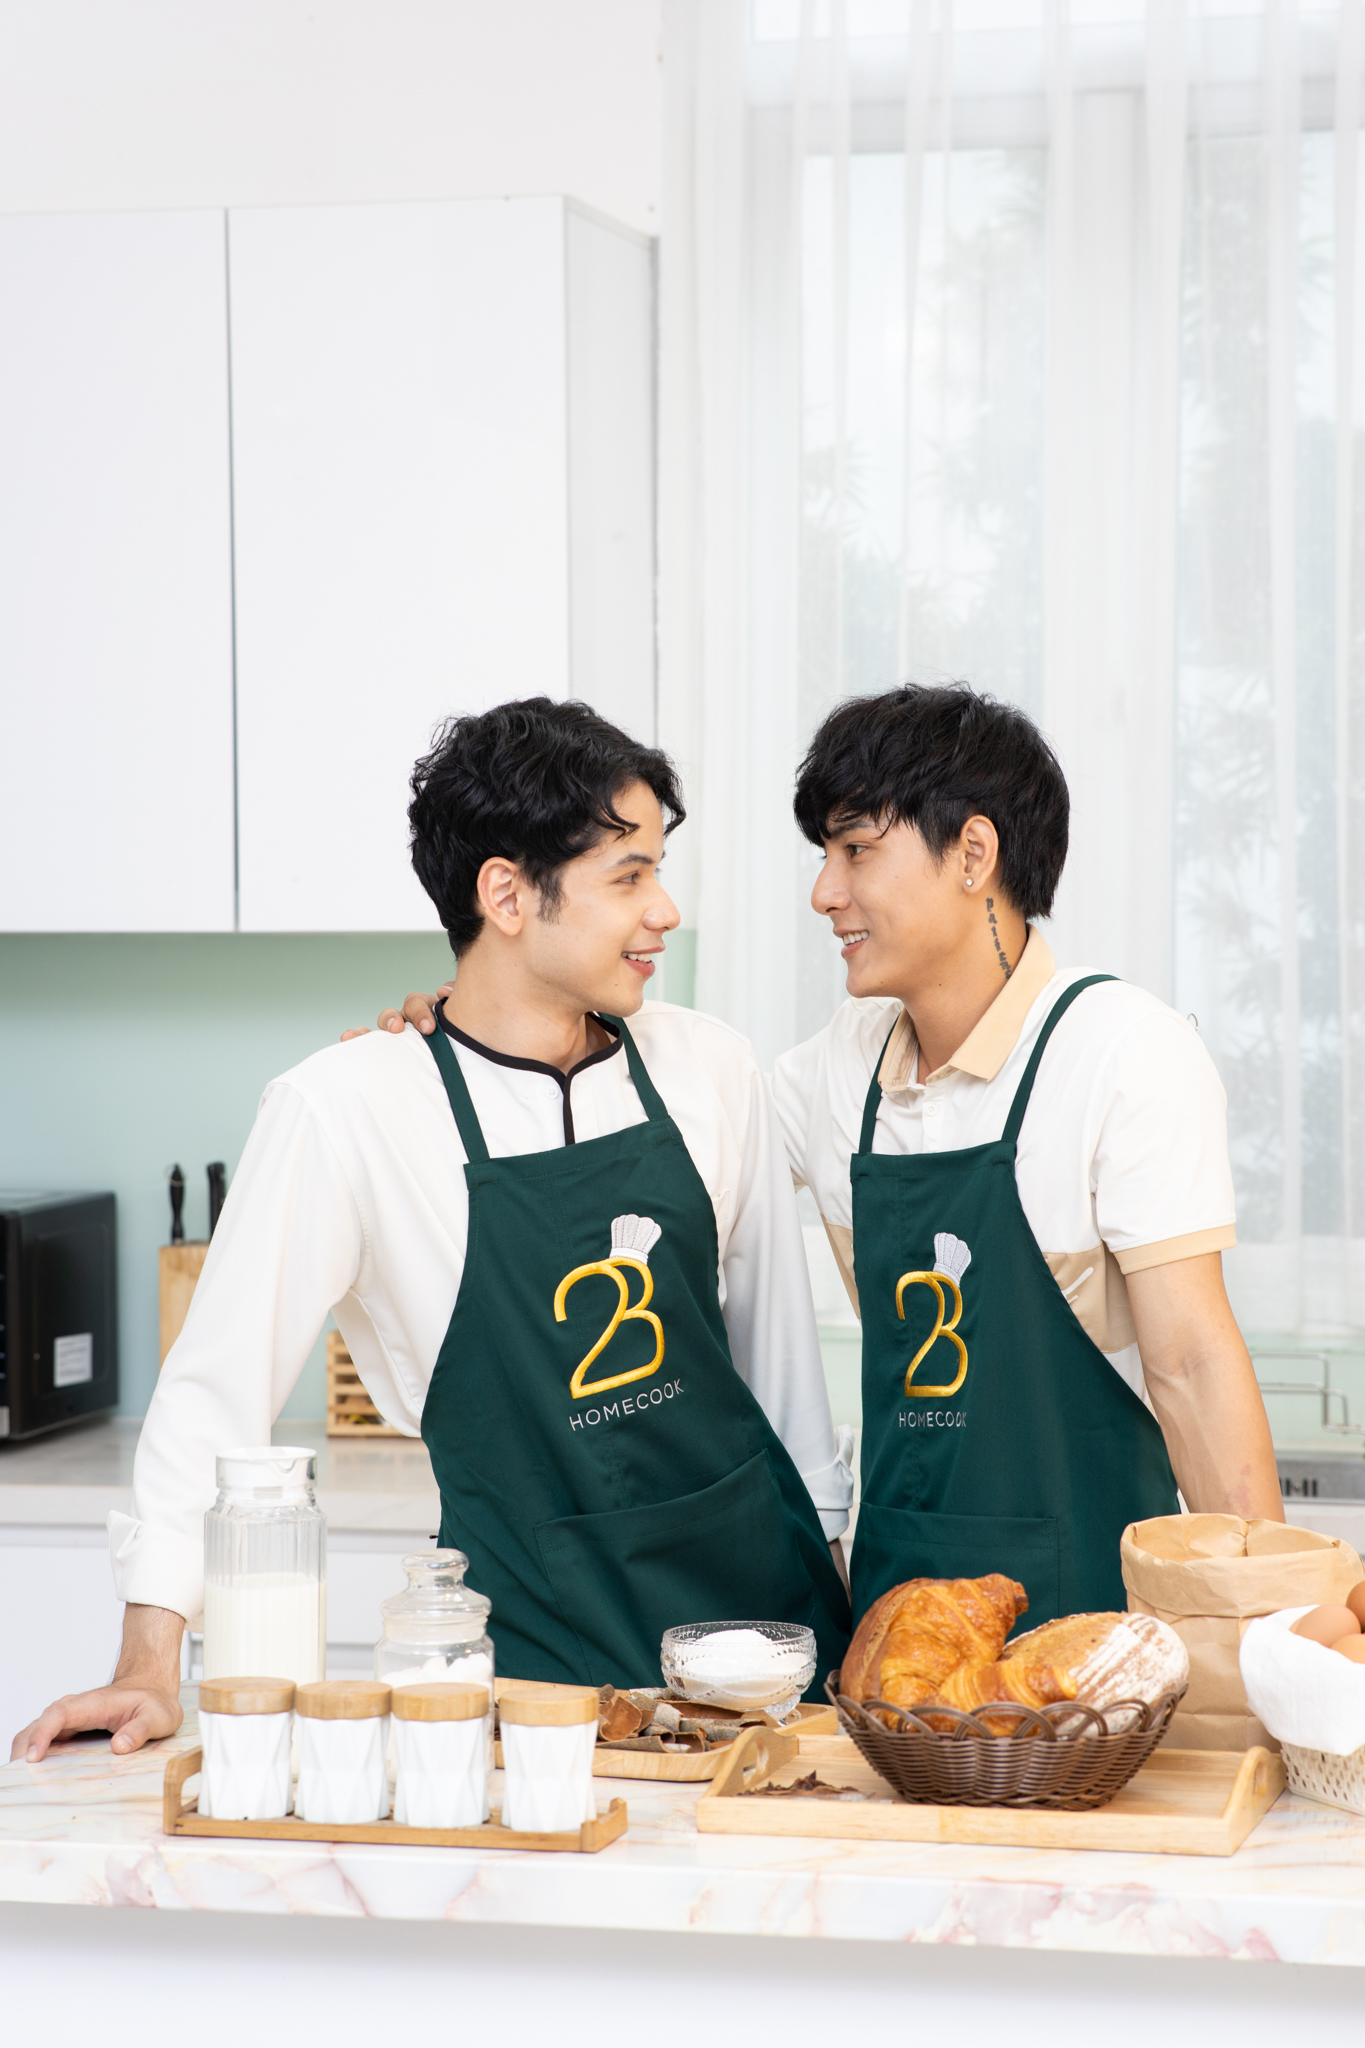 Fan Boy’s Love phát sốt với chuyện tình hai chàng hot boy trong “Bữa tối, Bánh ngọt và Anh”